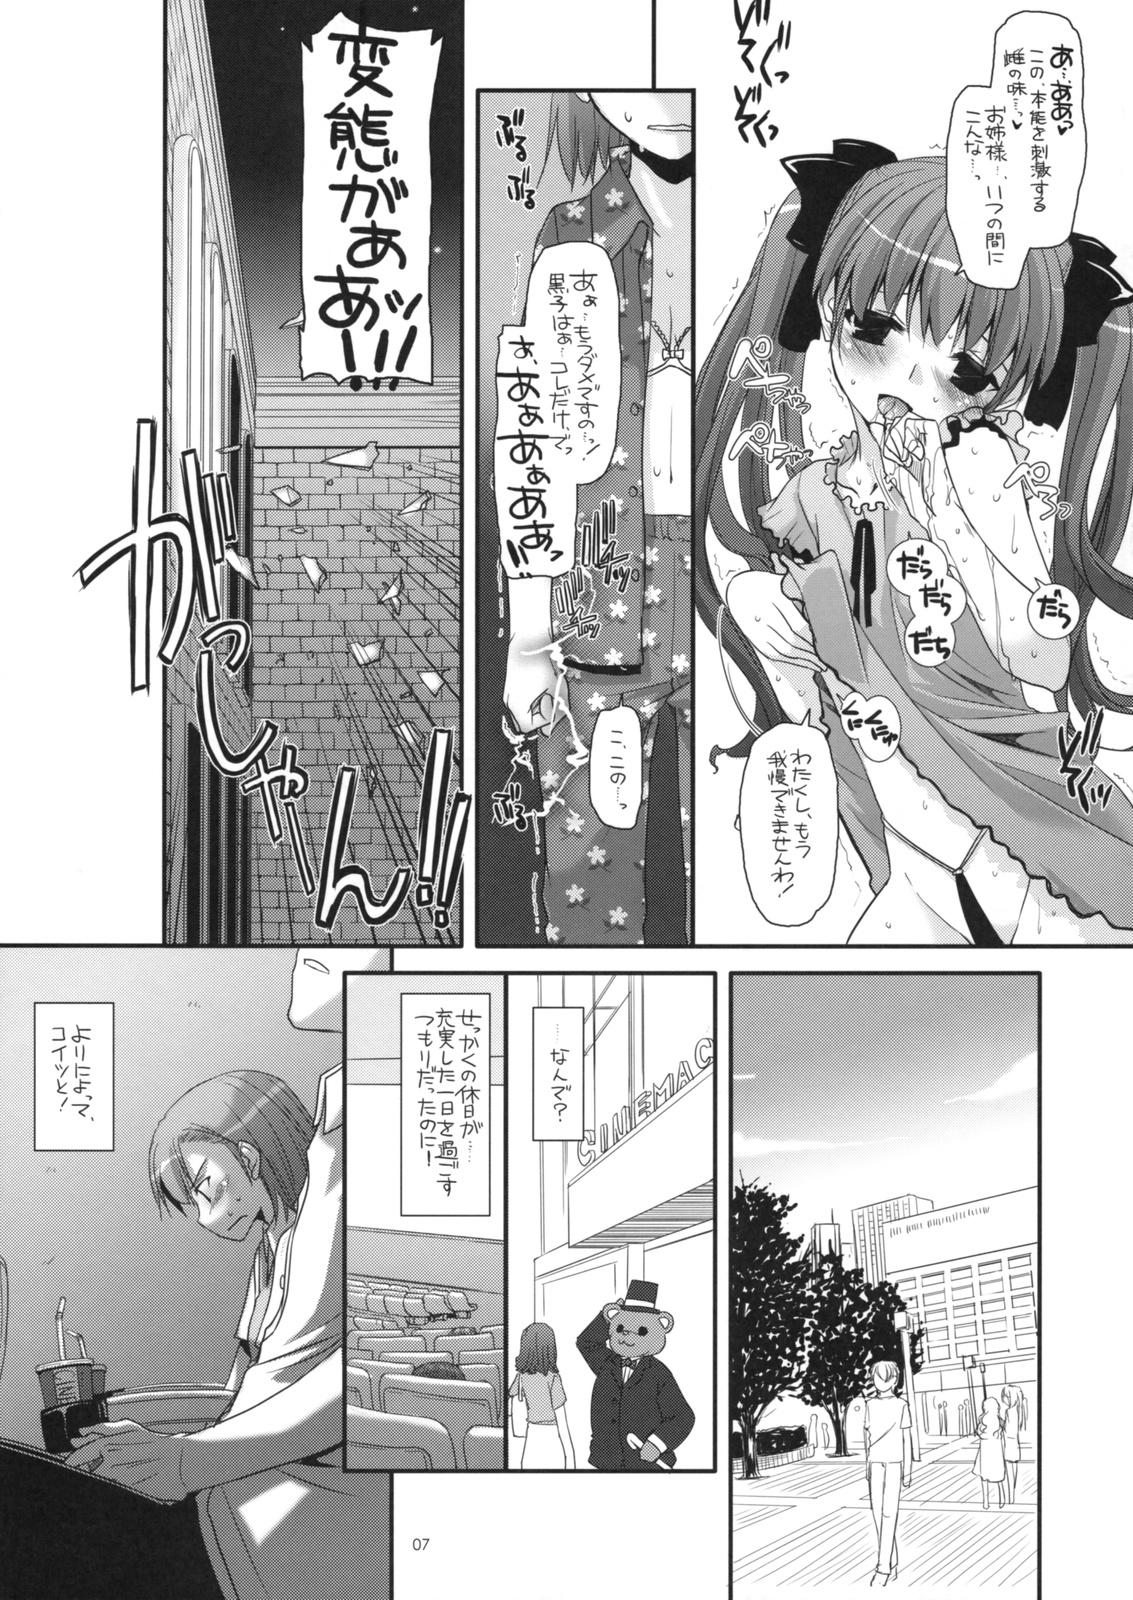 Mommy D.L. action 50 - Toaru kagaku no railgun Toaru majutsu no index Sister - Page 6